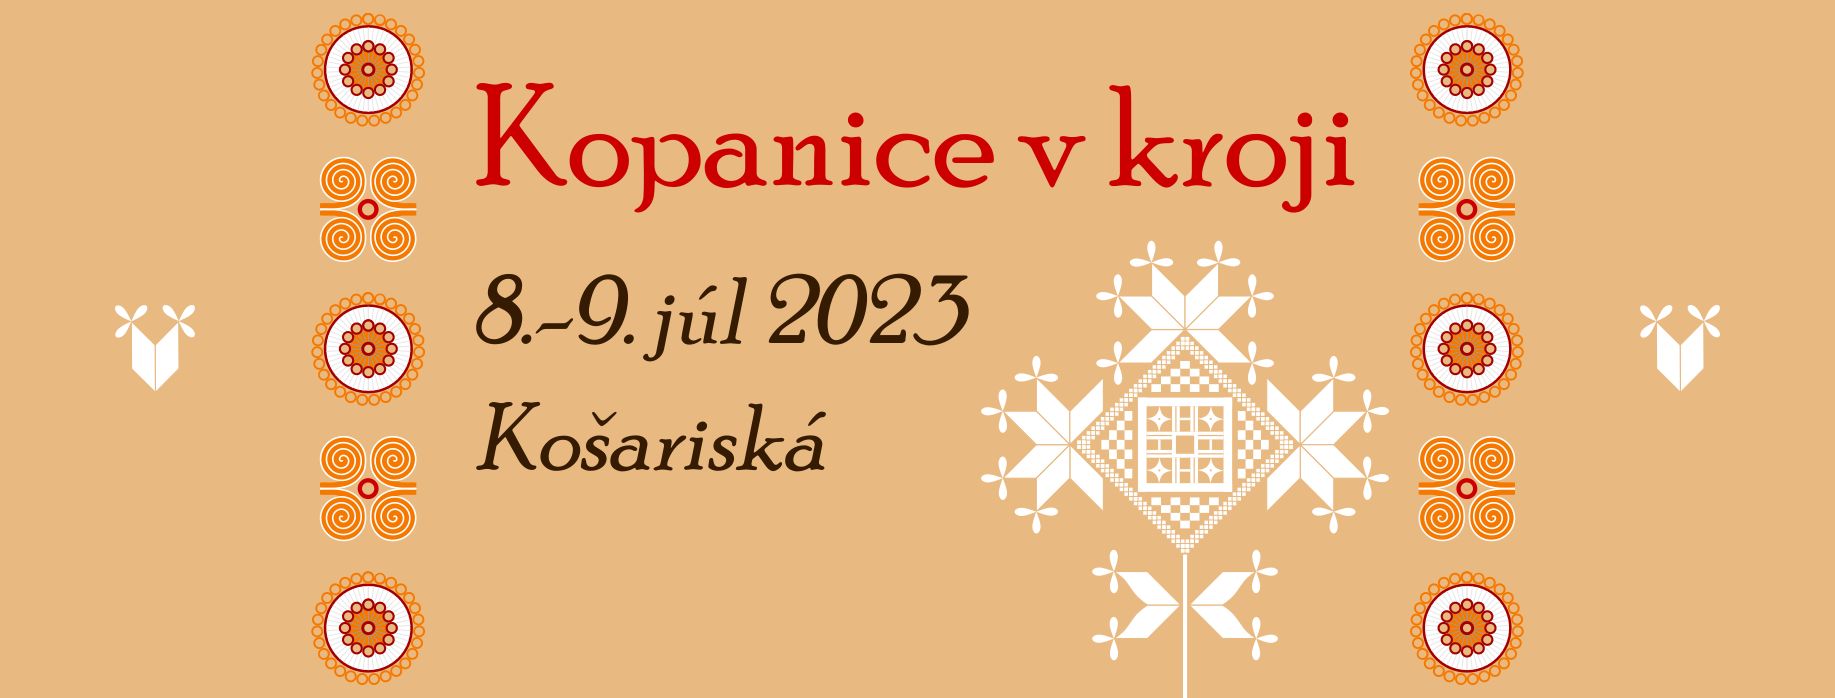 Kopanice v kroji 2023 Koarisk - 4. ronk